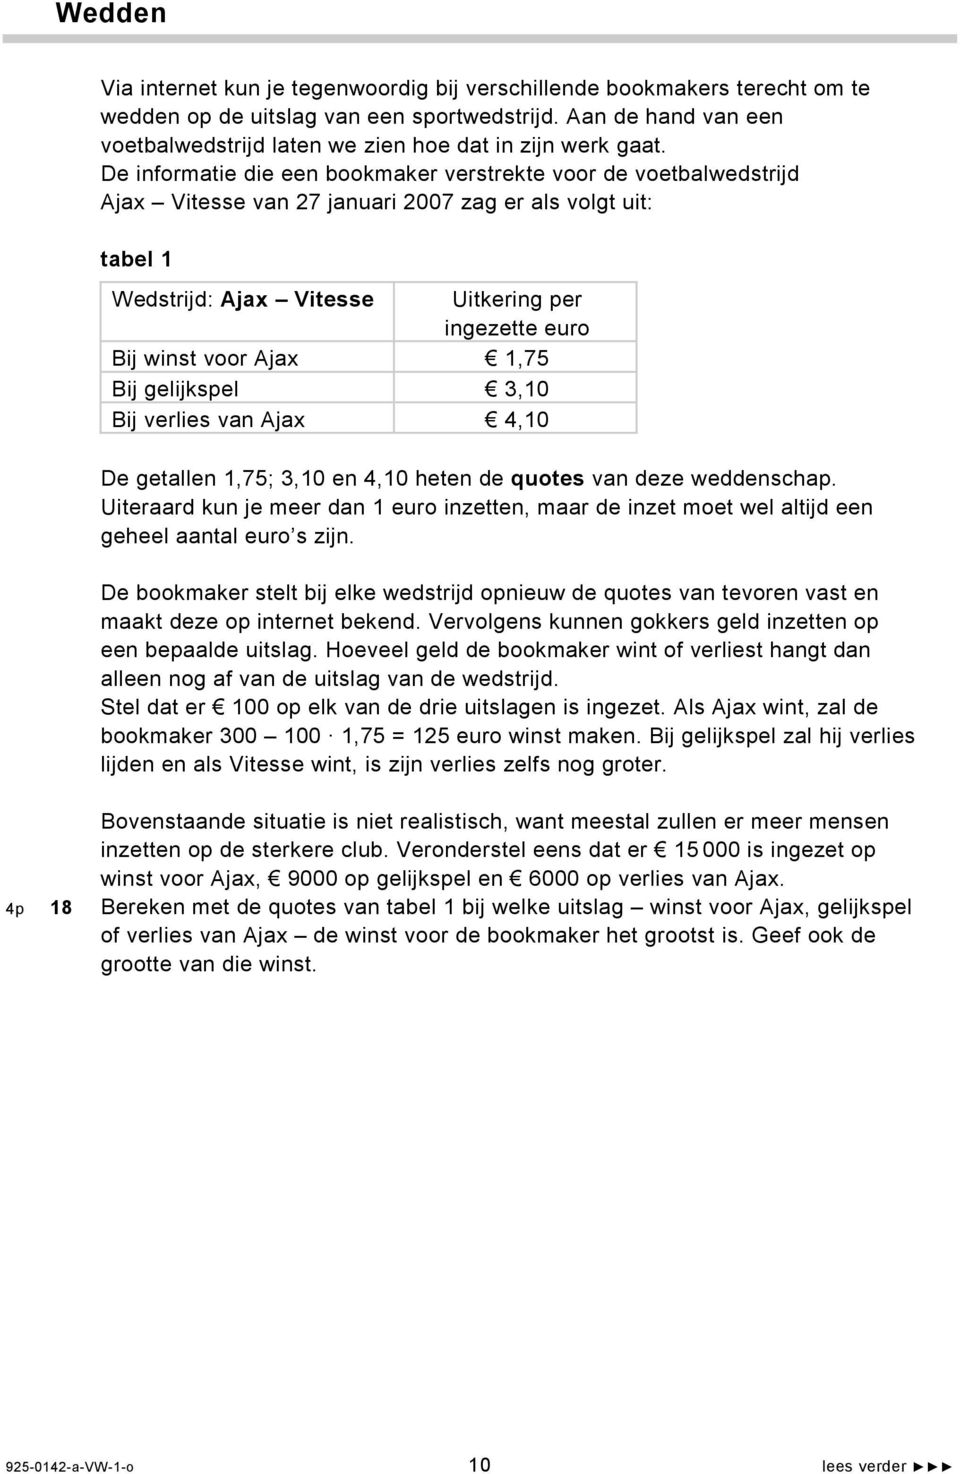 De informatie die een bookmaker verstrekte voor de voetbalwedstrijd Ajax Vitesse van 27 januari 2007 zag er als volgt uit: tabel 1 Wedstrijd: Ajax Vitesse Uitkering per ingezette euro Bij winst voor